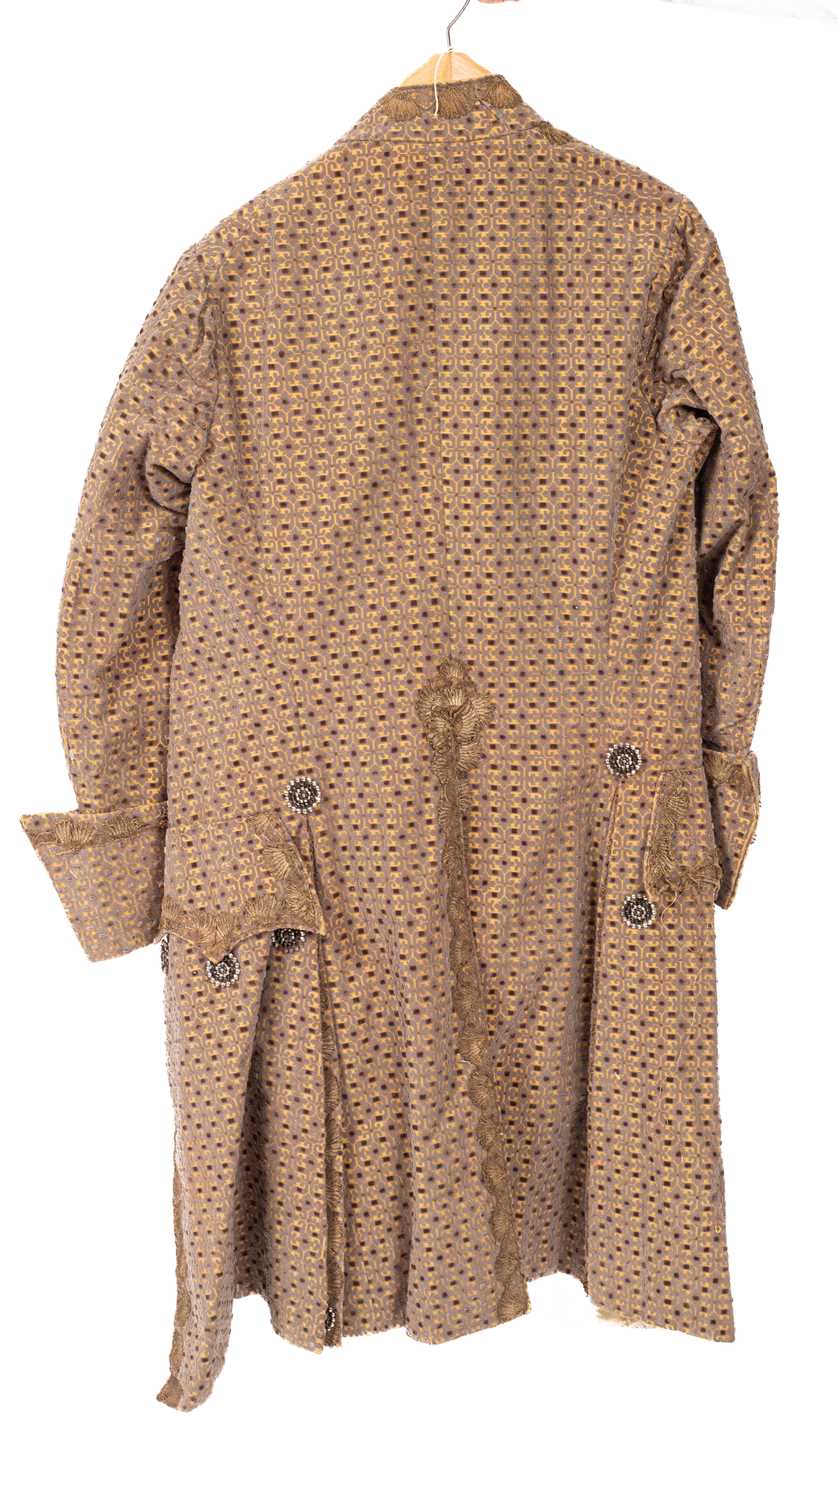 A Gentleman's frock coat - Image 2 of 2